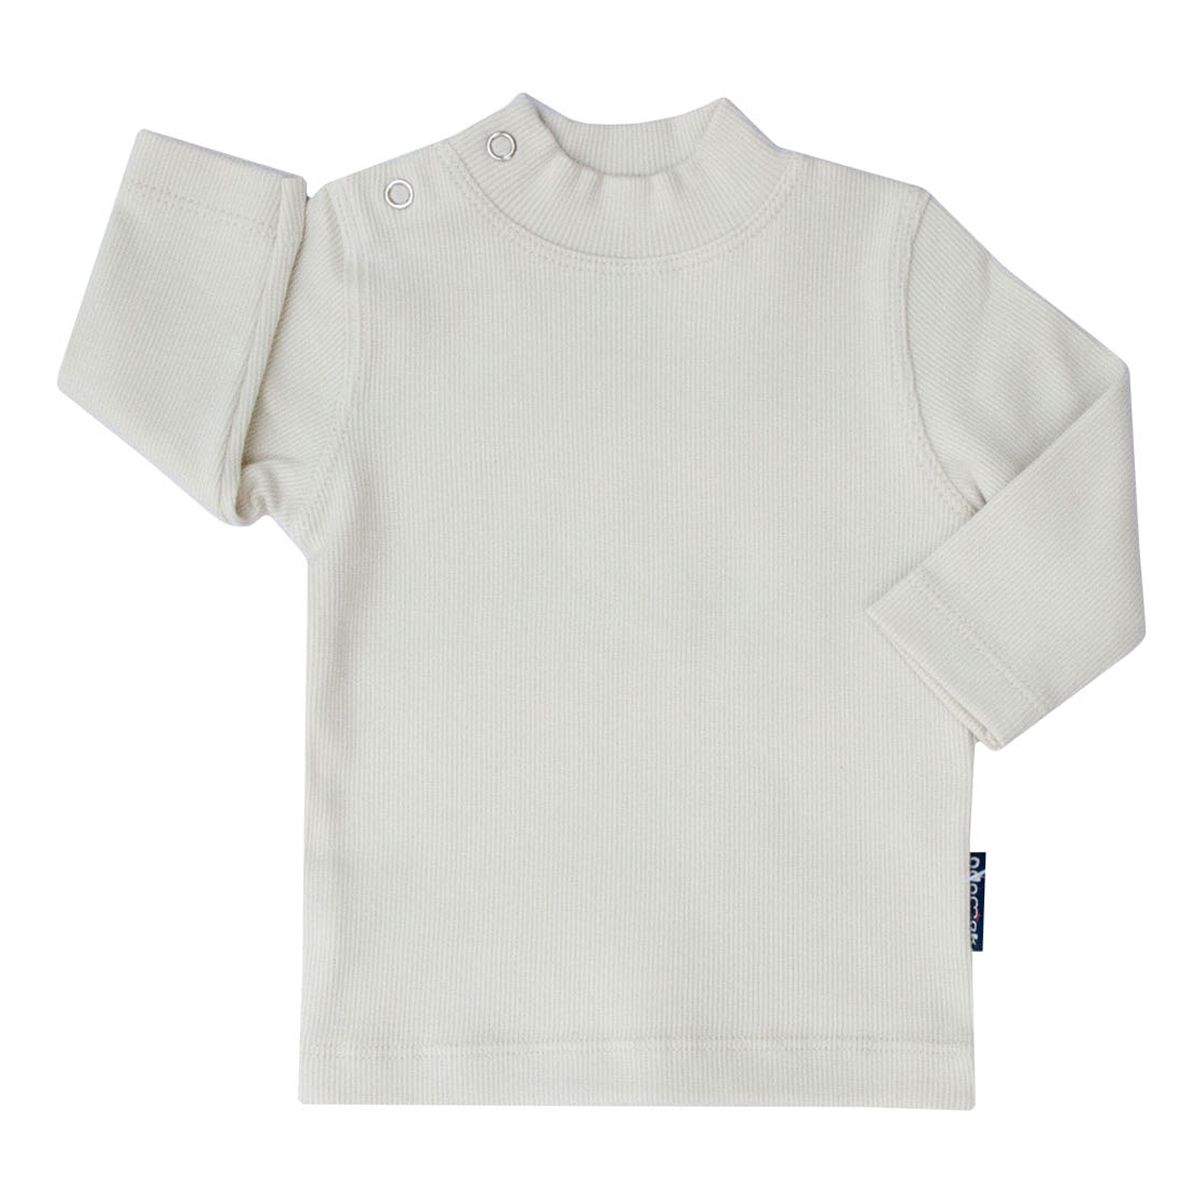 تی شرت آستین بلند بچگانه آدمک کد 145401 رنگ سفید -  - 1